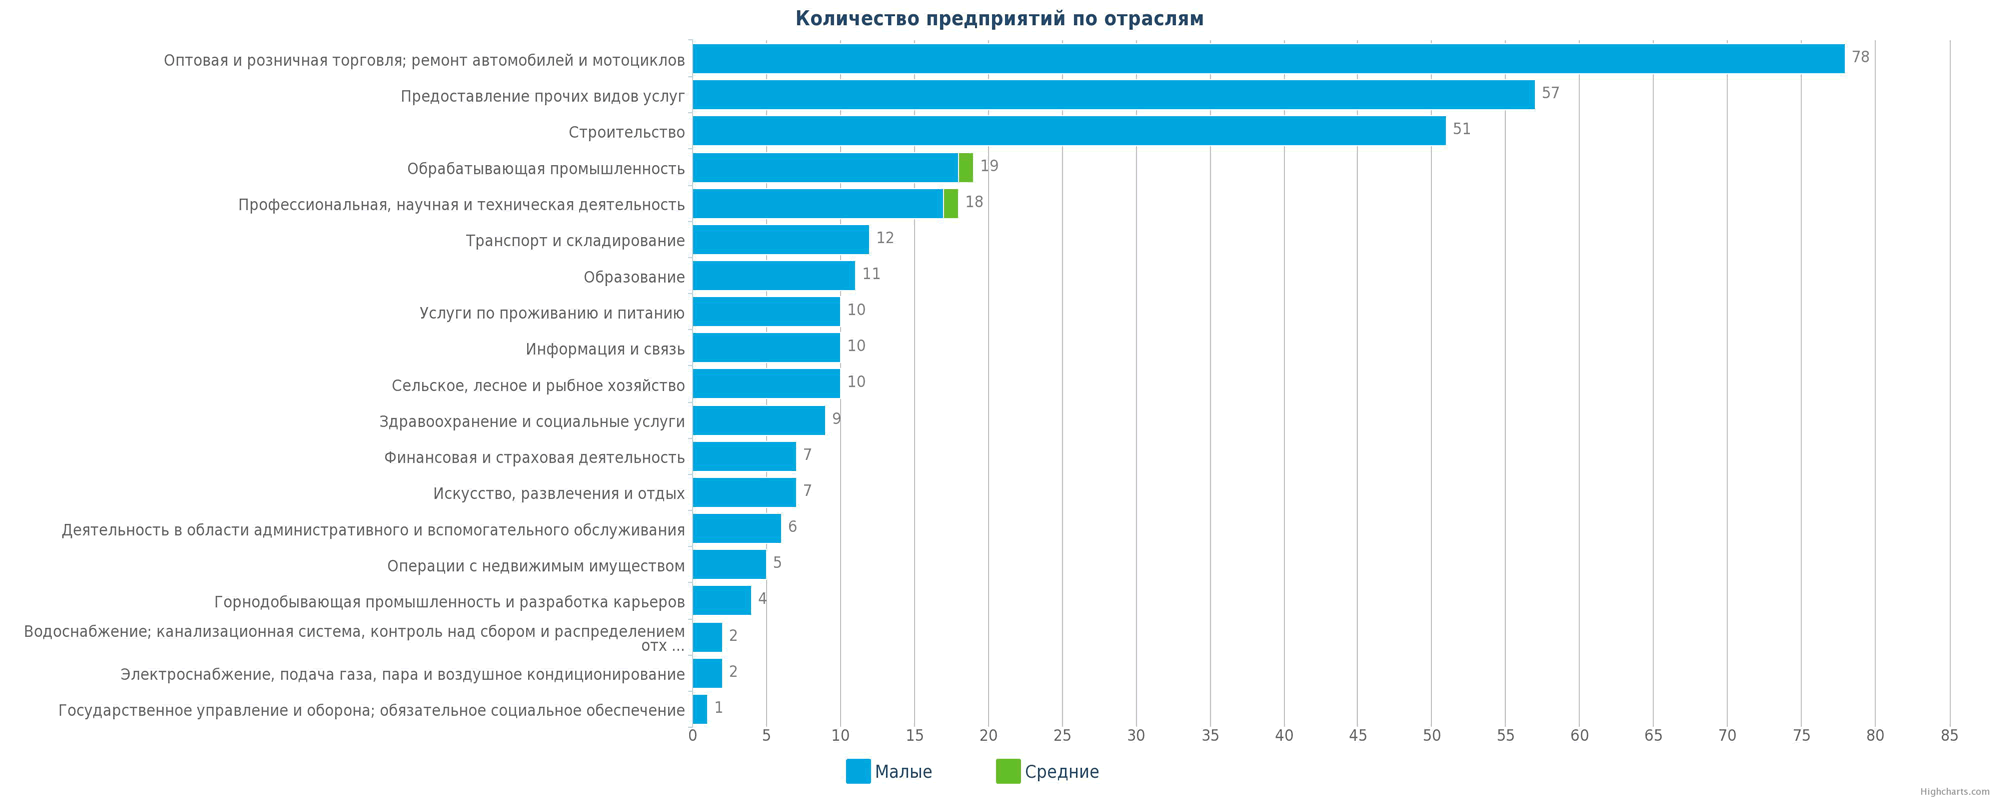 Количество новых юридических лиц в базе по регионам Казахстана